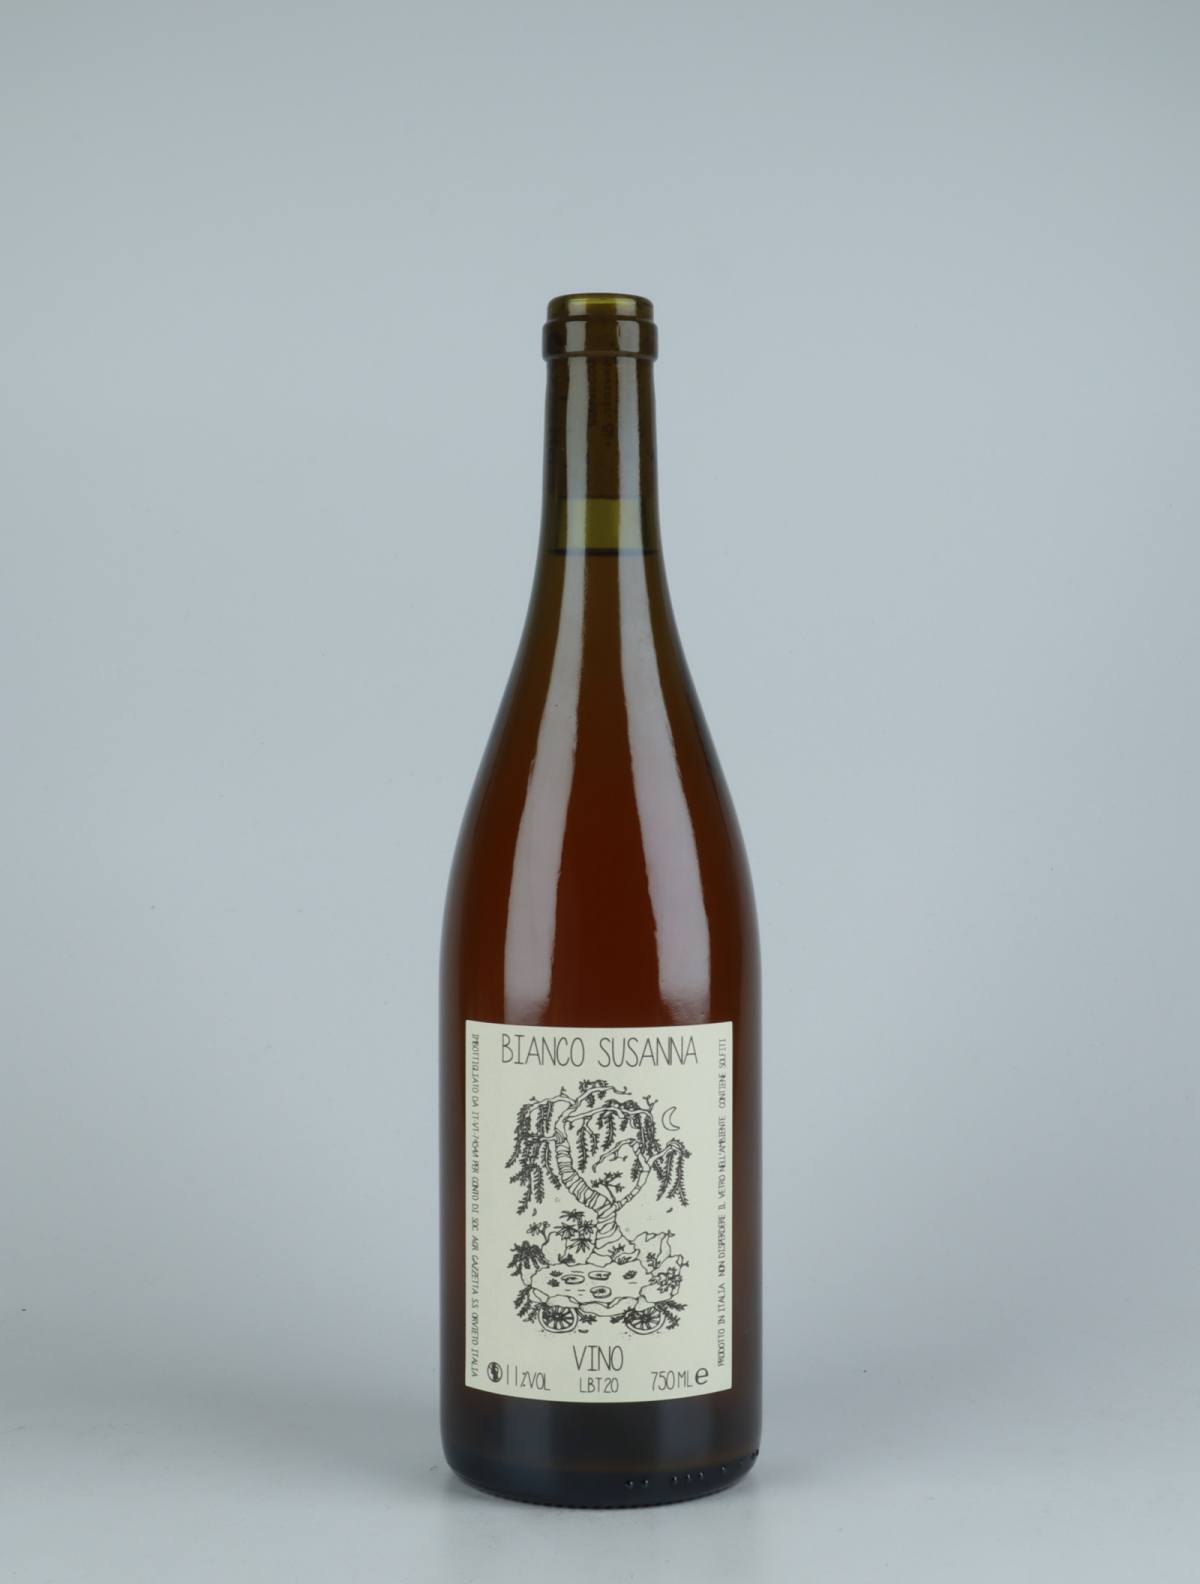 A bottle 2020 Vino Bianco Susanna White wine from Gazzetta, Lazio in Italy